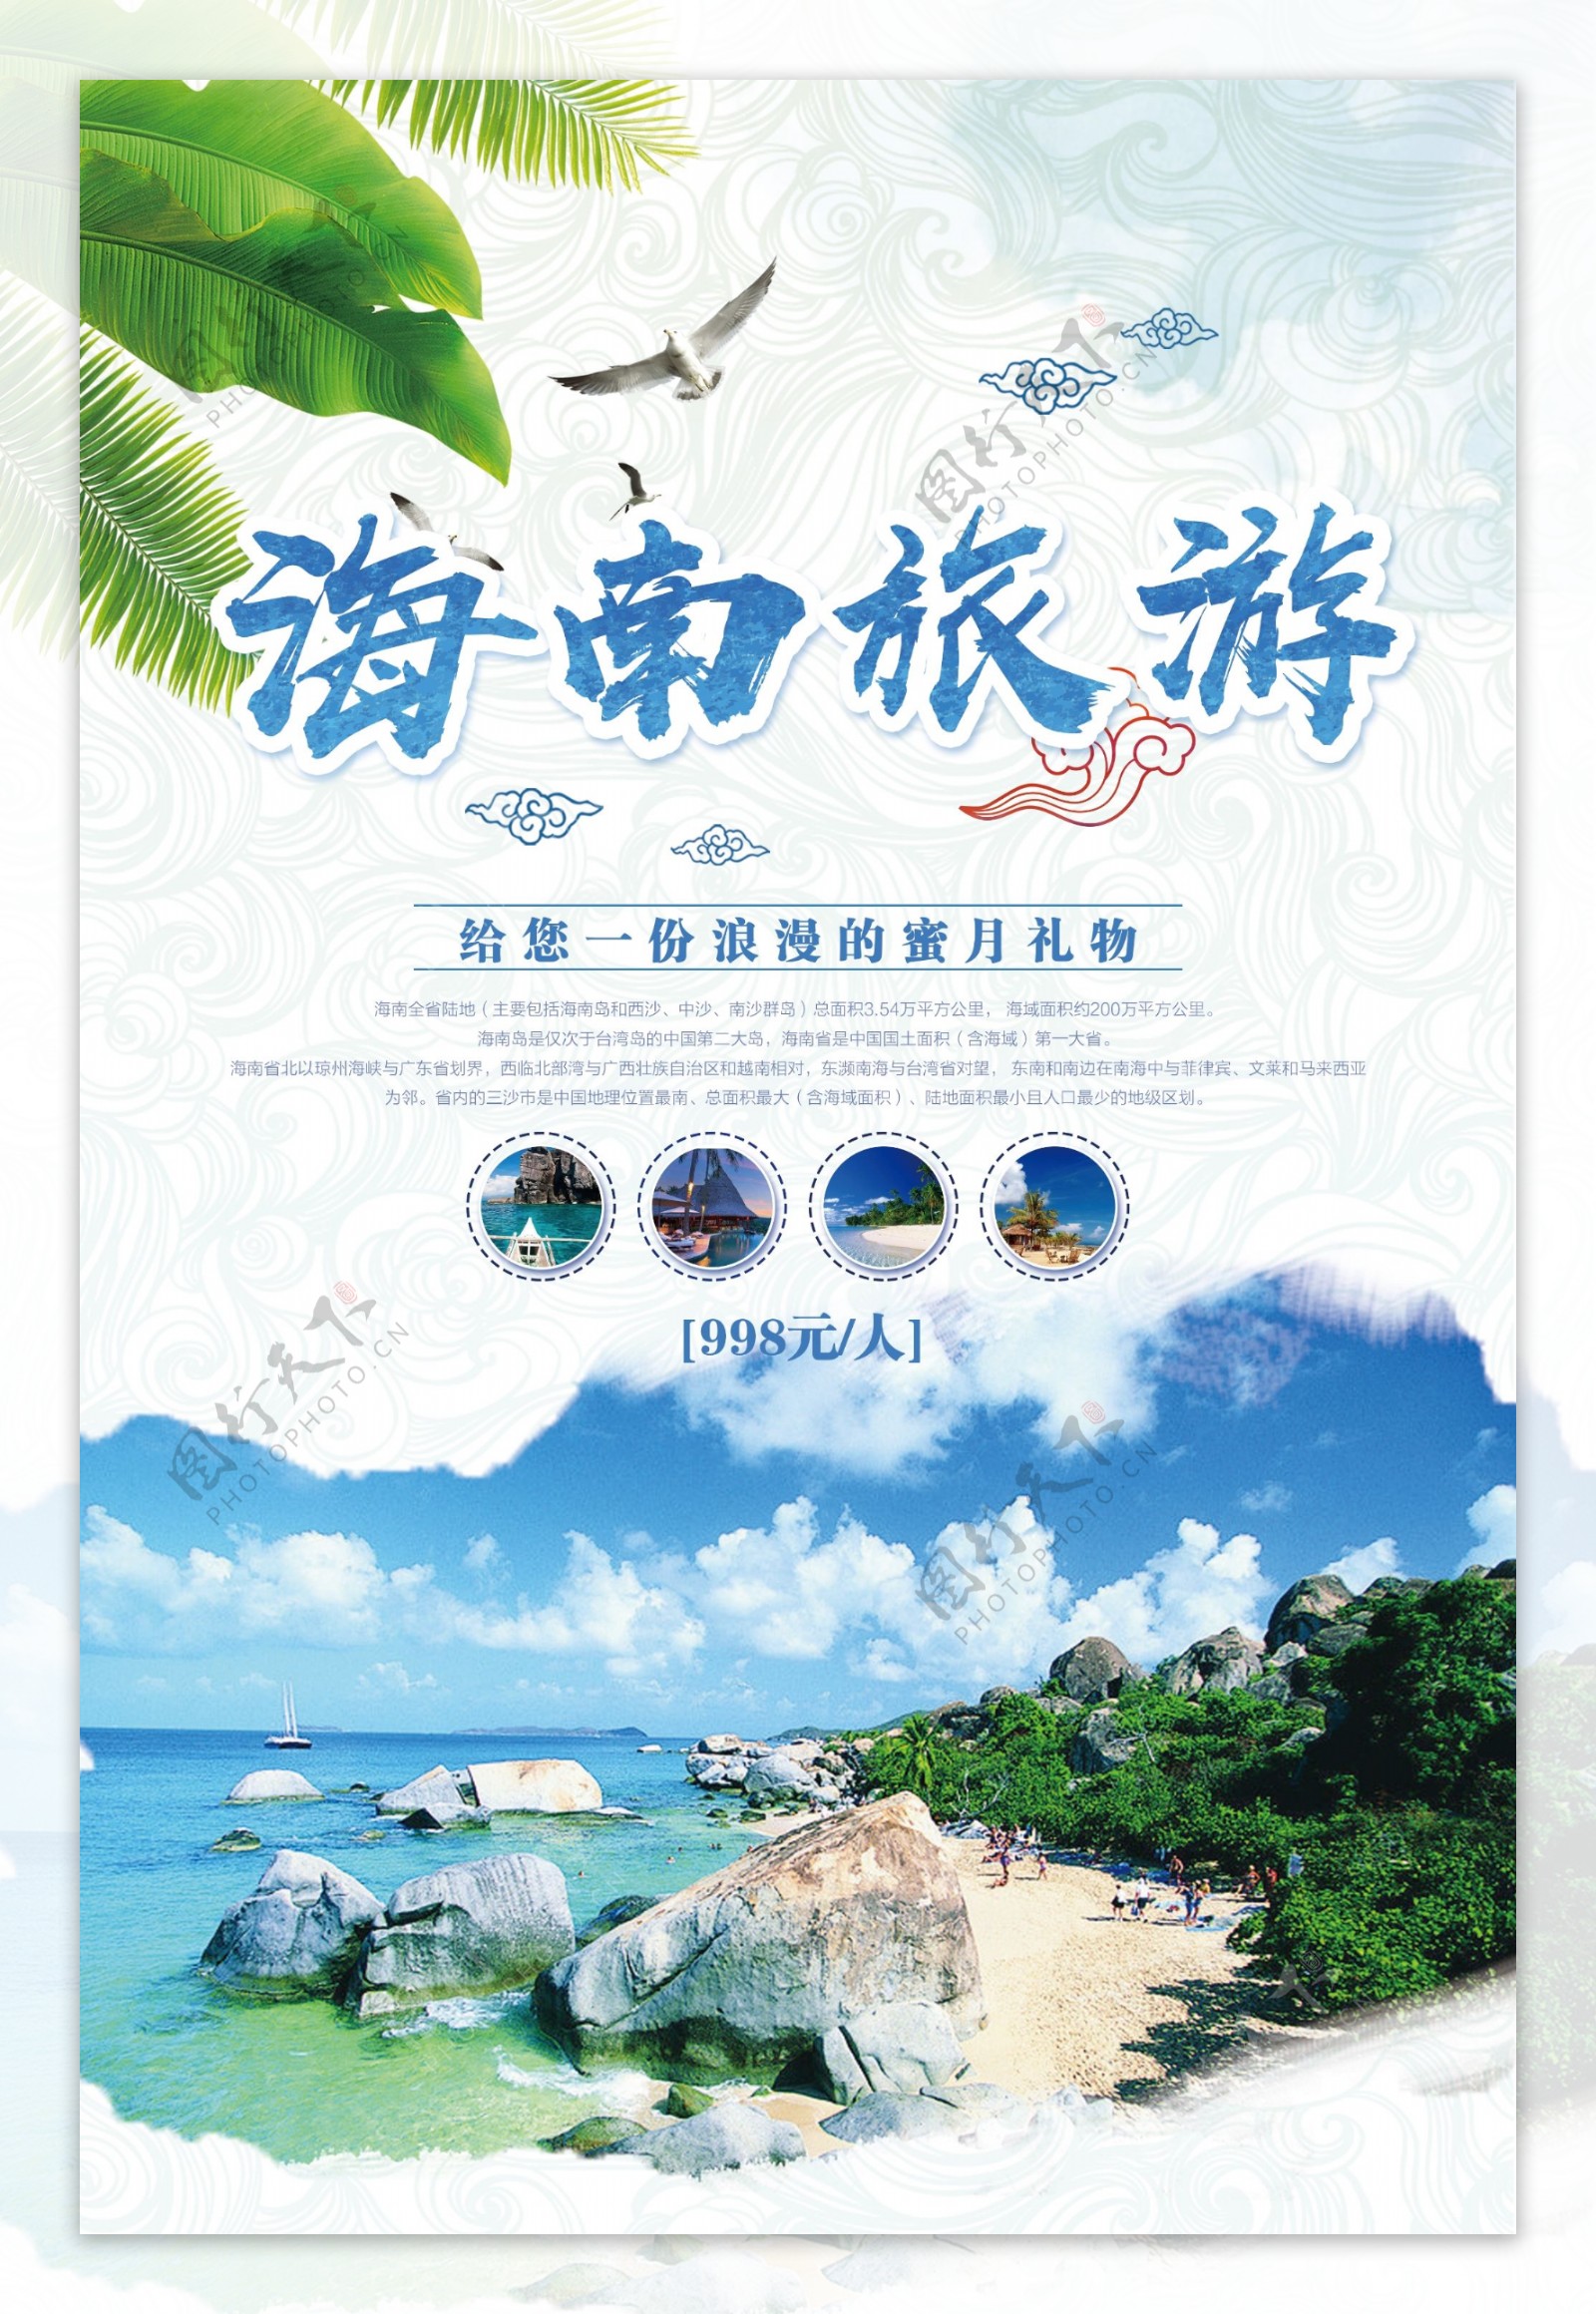 简约大气海南旅游宣传海报